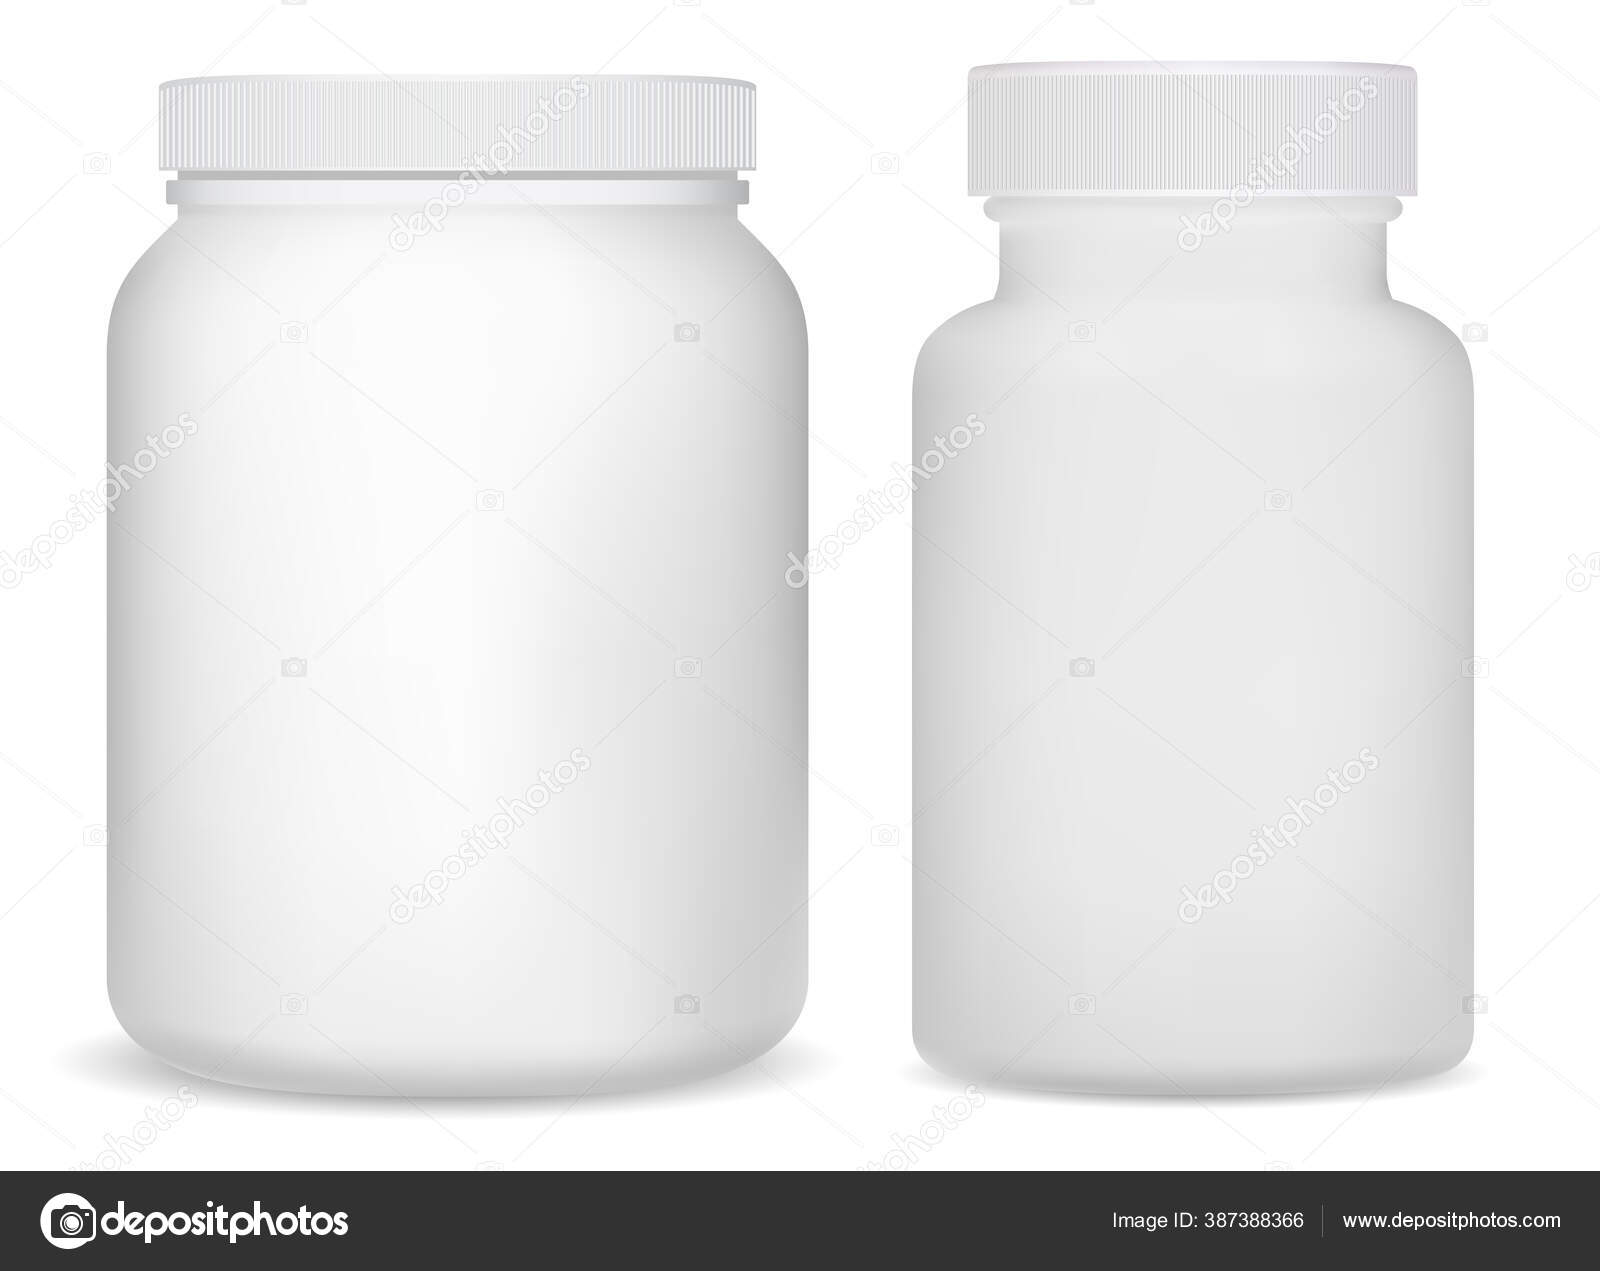 Protein Powder in a Bottle